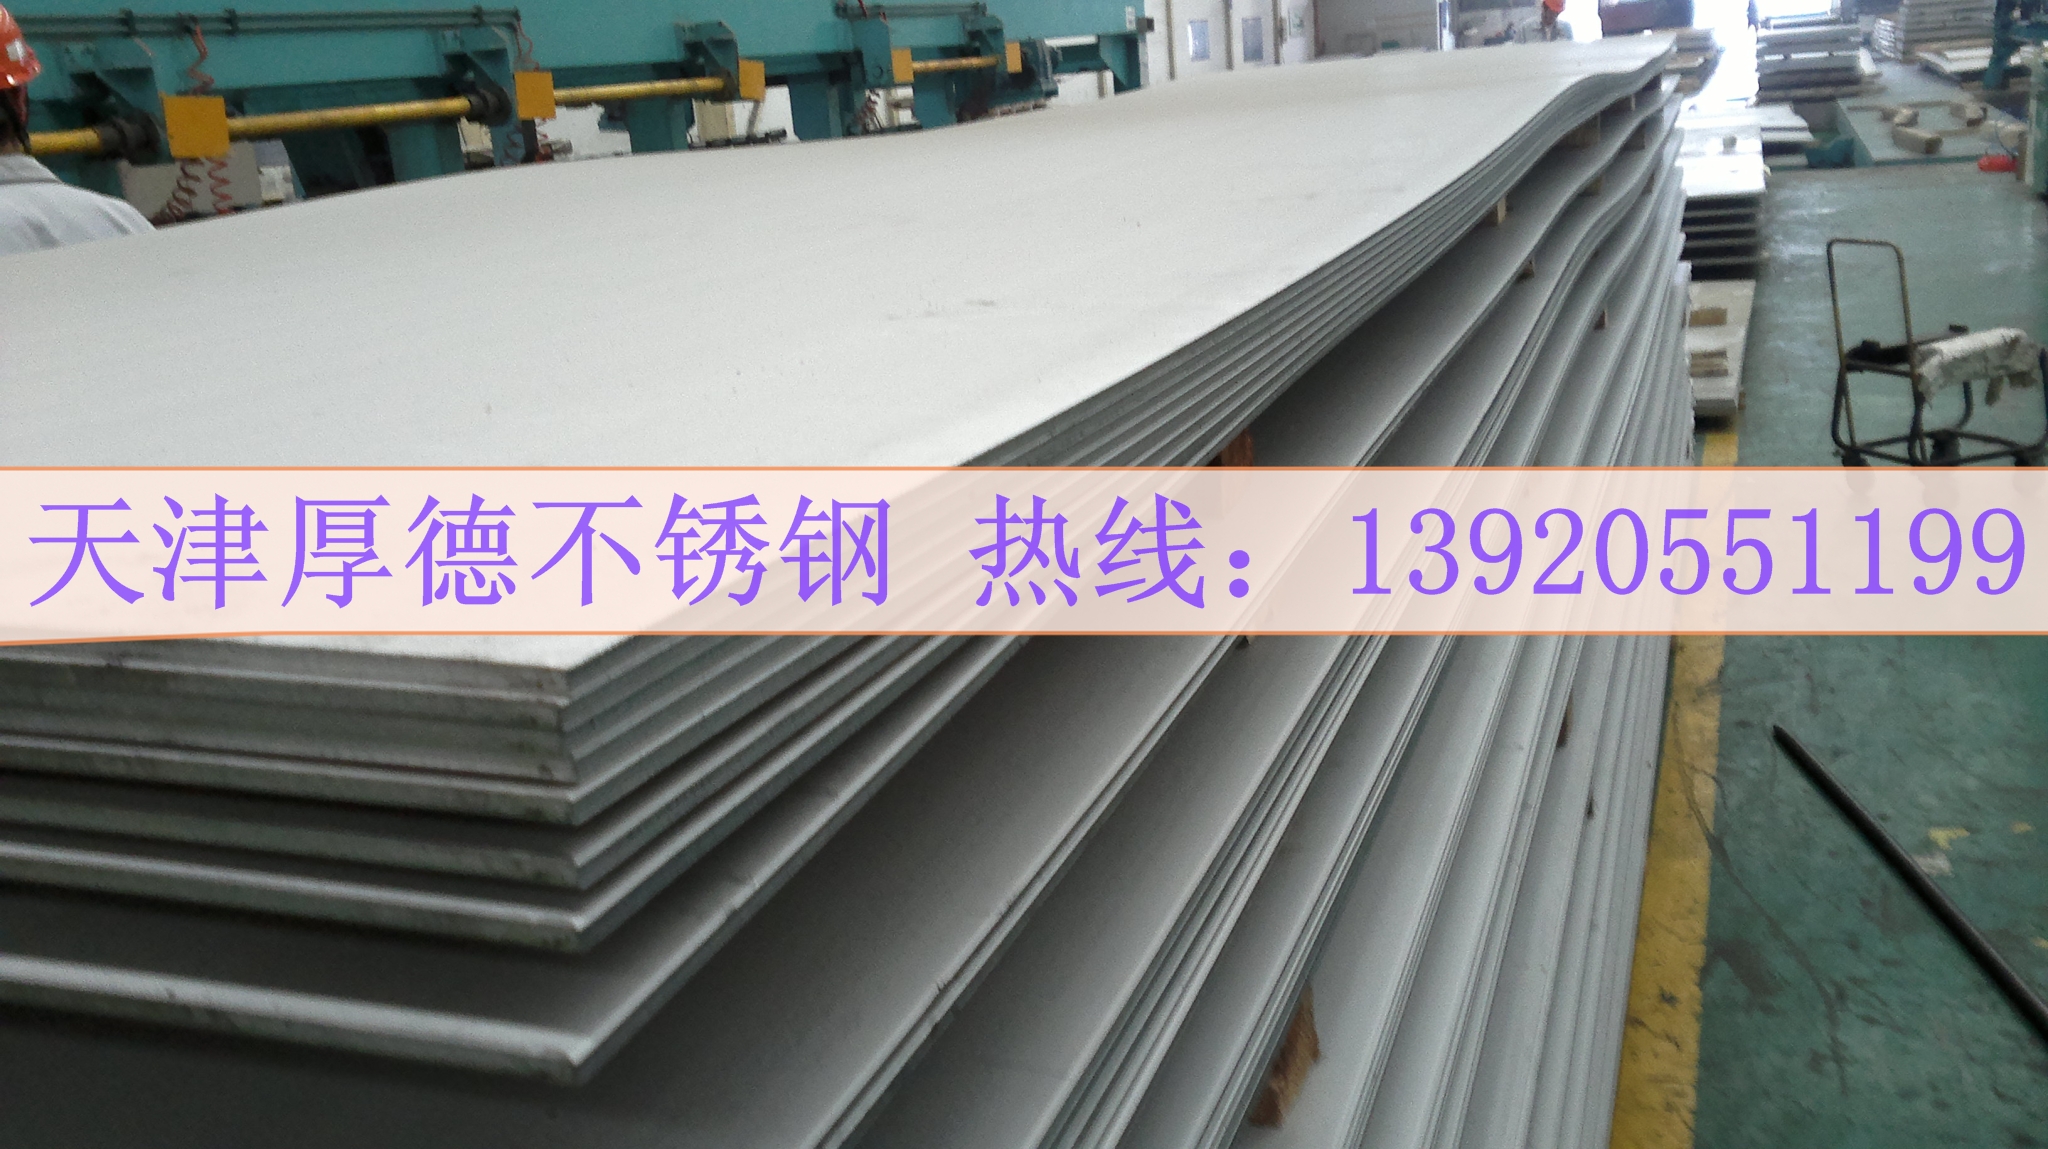 304不锈钢板今日价格 天津304不锈钢板多少钱 天津304白钢板现货价格图片